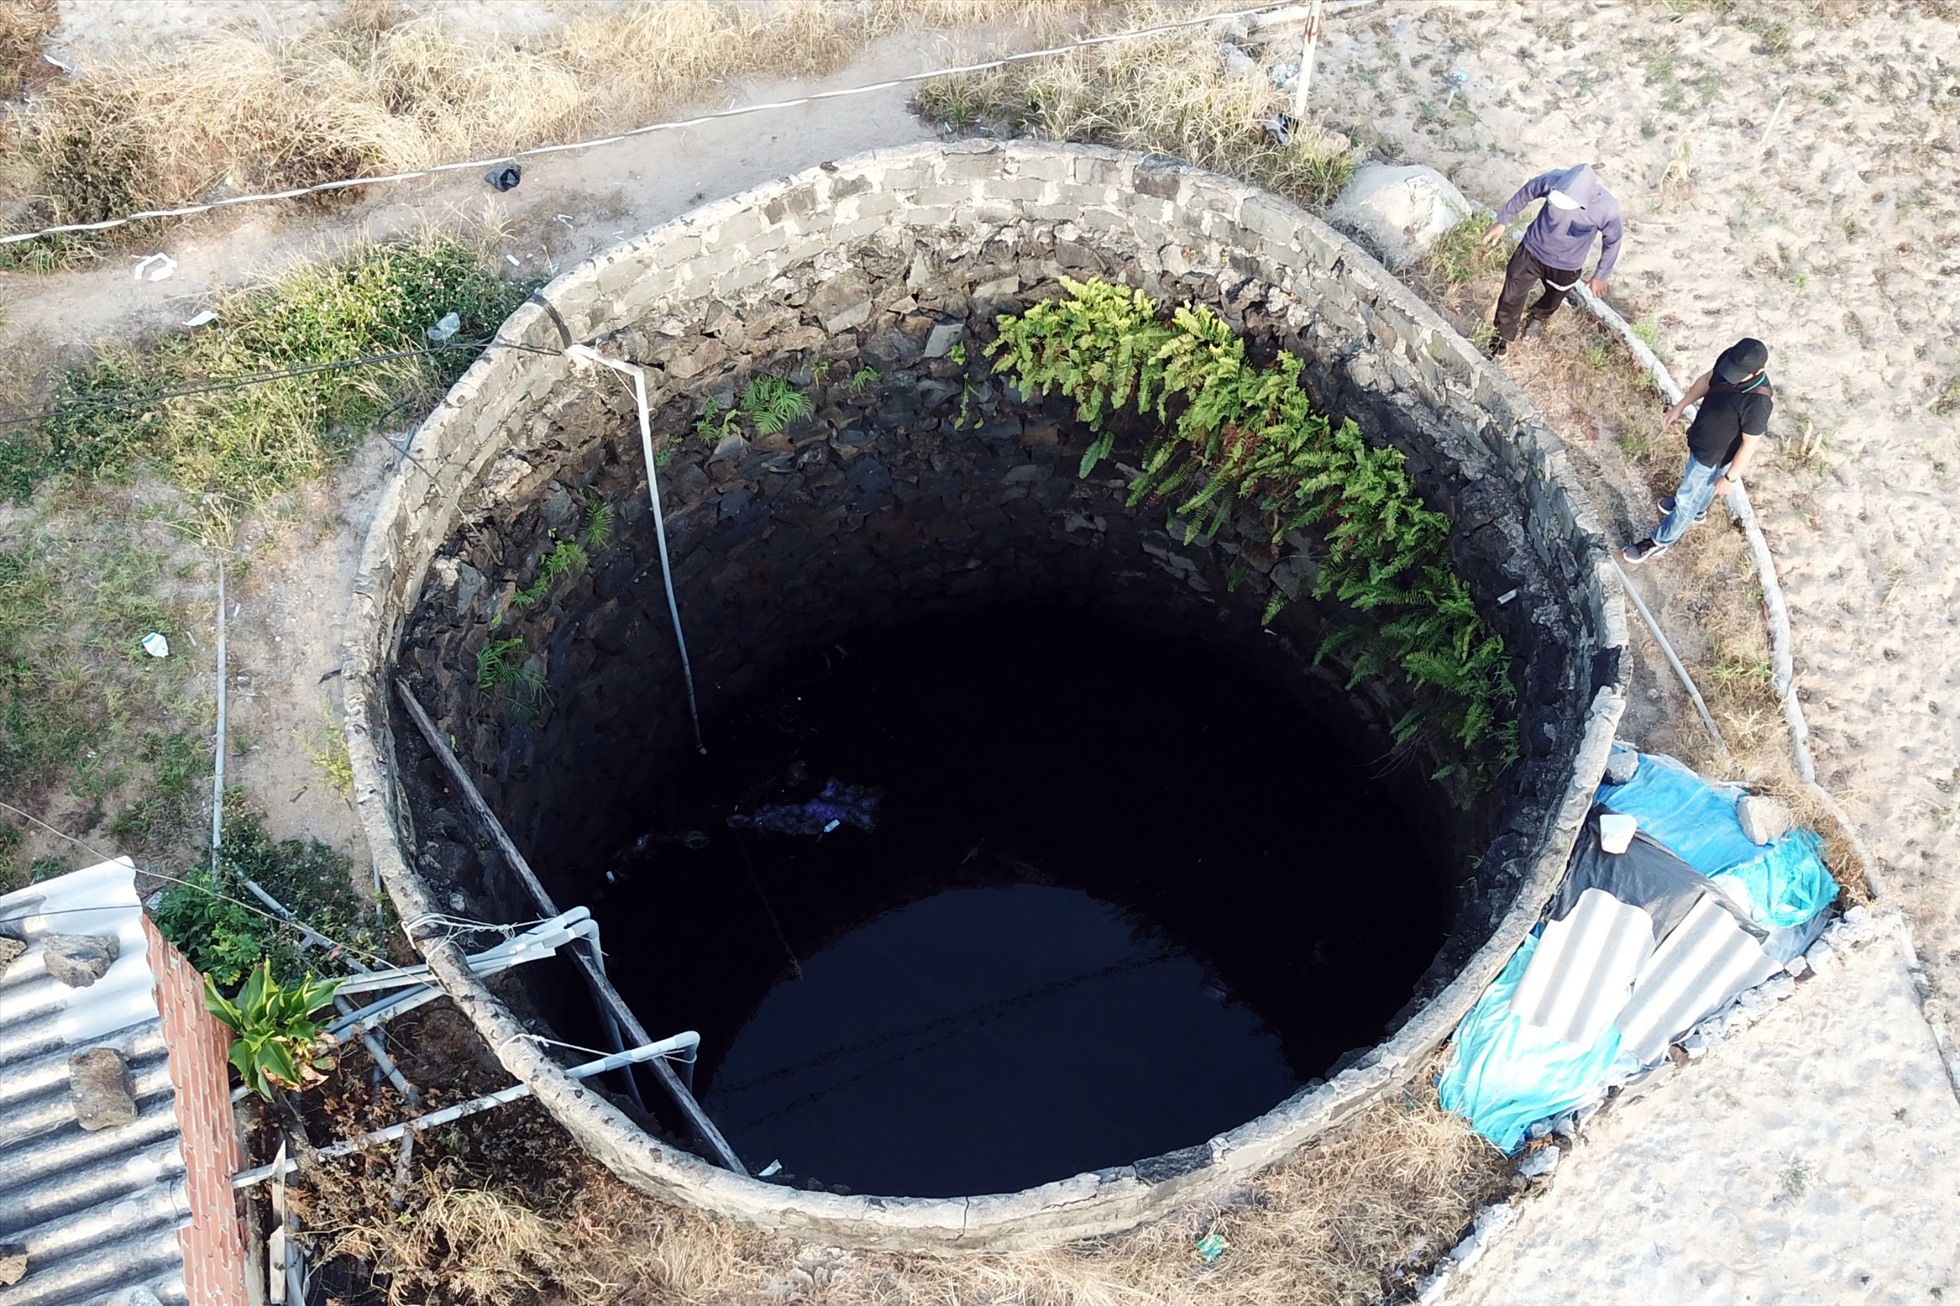 Đảo Lý Sơn có trên 2.149 giếng nước, việc đào giếng ồ ạt là một trong những nguyên nhân lớn khiến mạch nước ngầm suy kiệt. Bất cứ tổ chức, cá nhân nào muốn khoan giếng ở Lý Sơn đều phải xin phép. Ảnh: Ngọc Viên